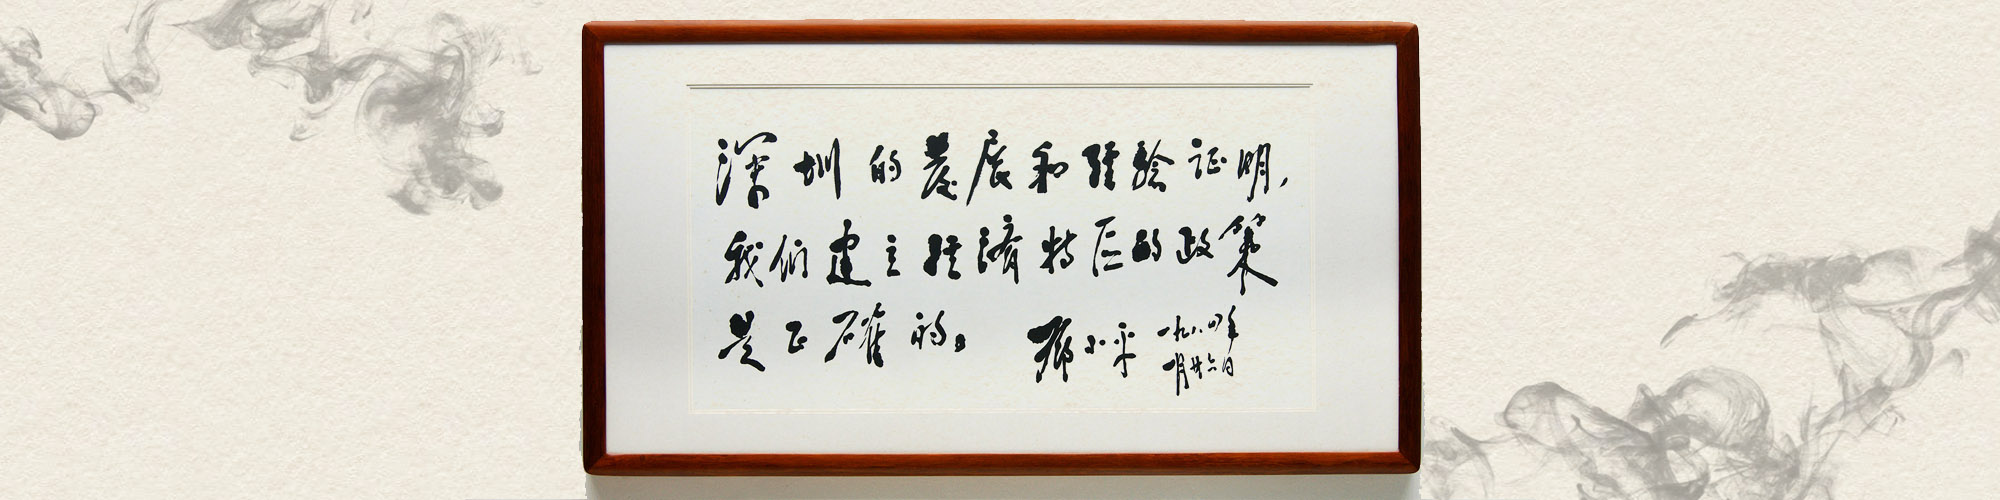 1984年1月       邓爷爷来深圳画了个圈并题词